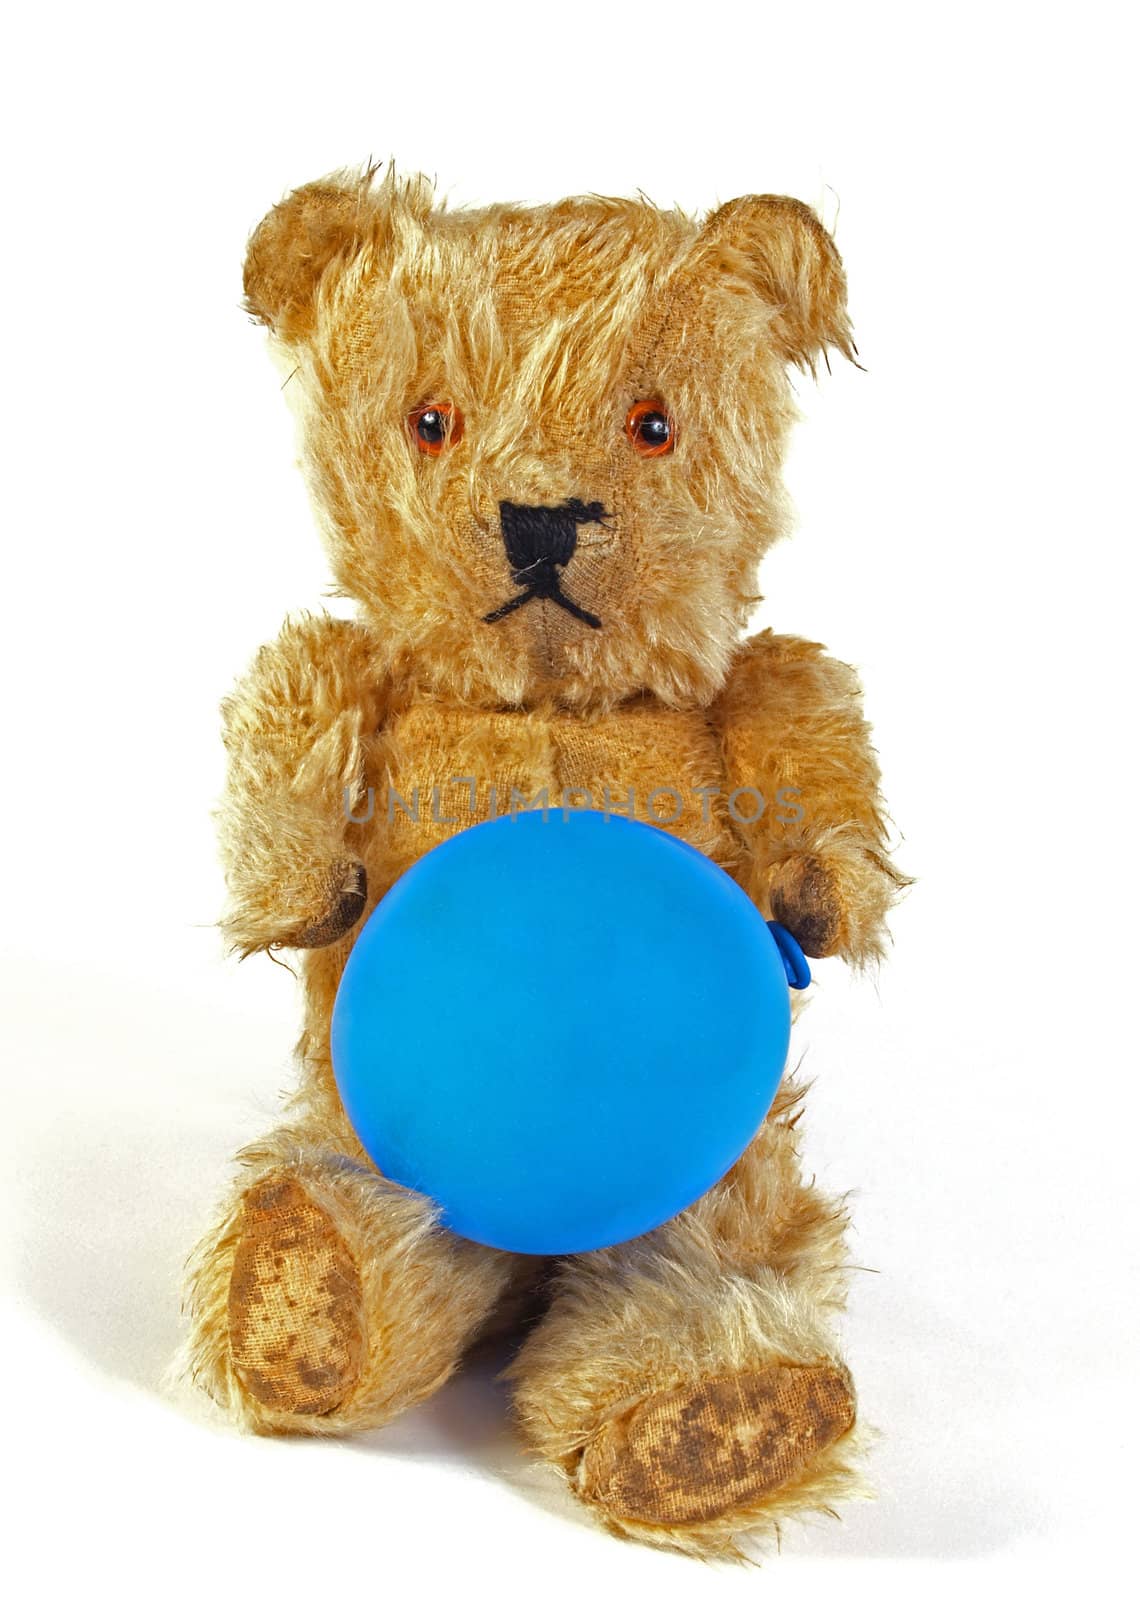 Teddy bear holding a blue balloon.